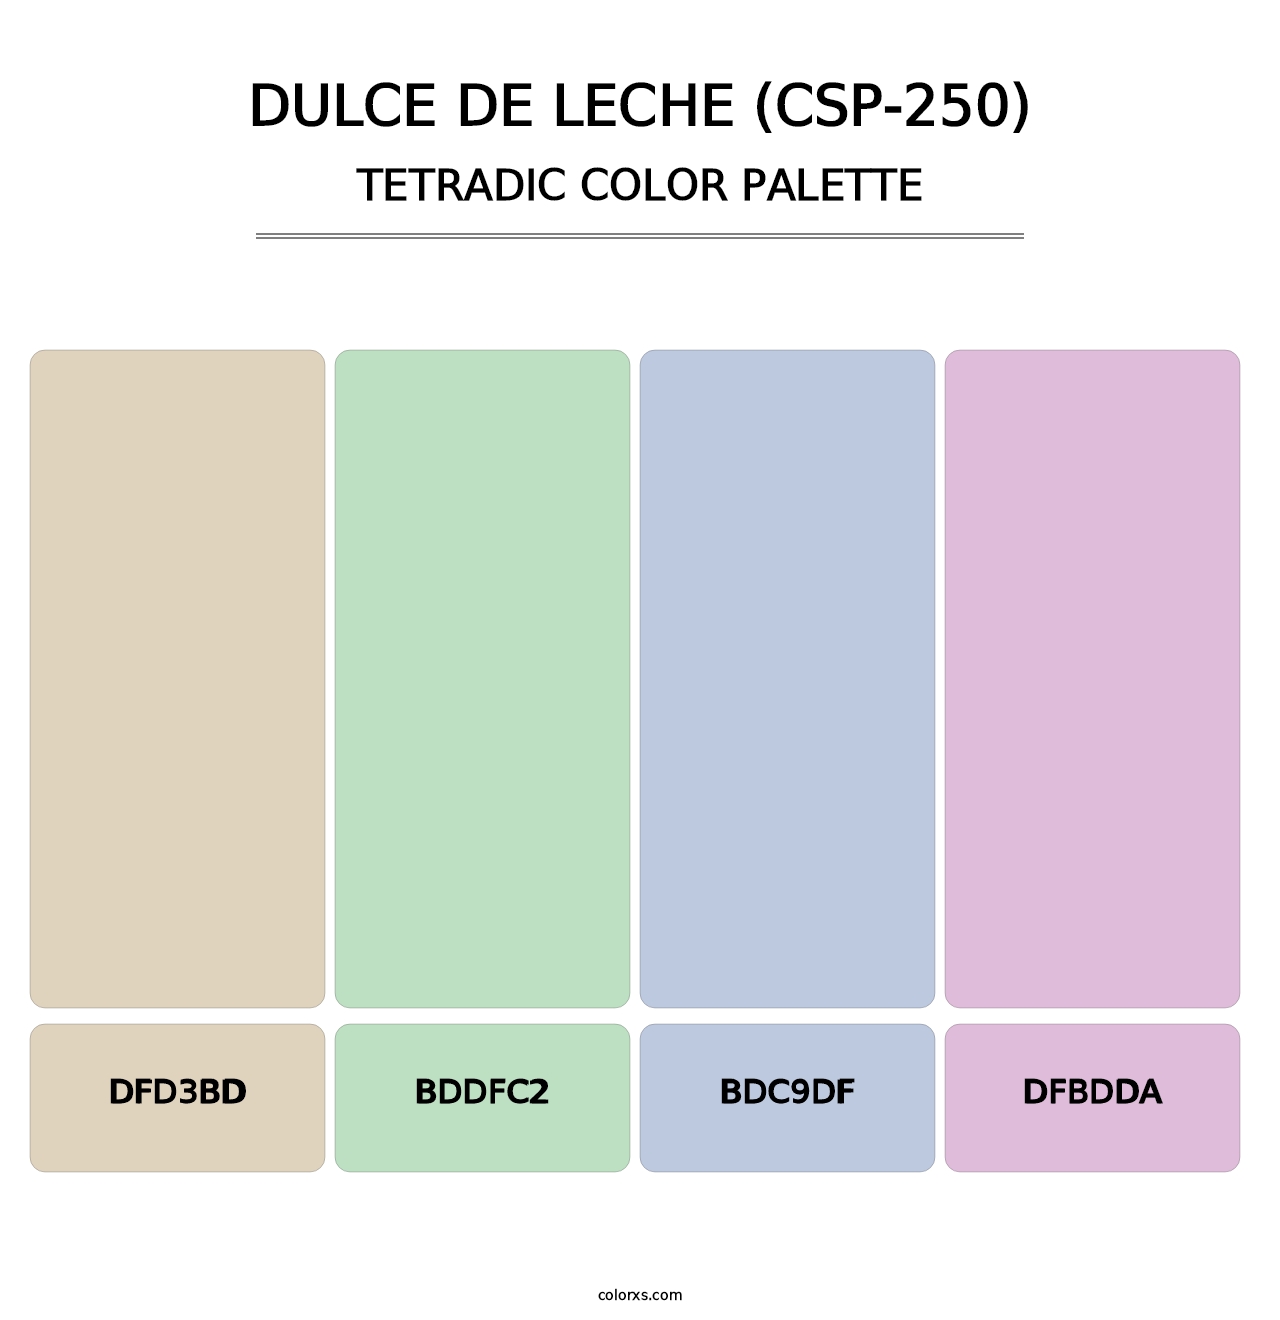 Dulce de Leche (CSP-250) - Tetradic Color Palette